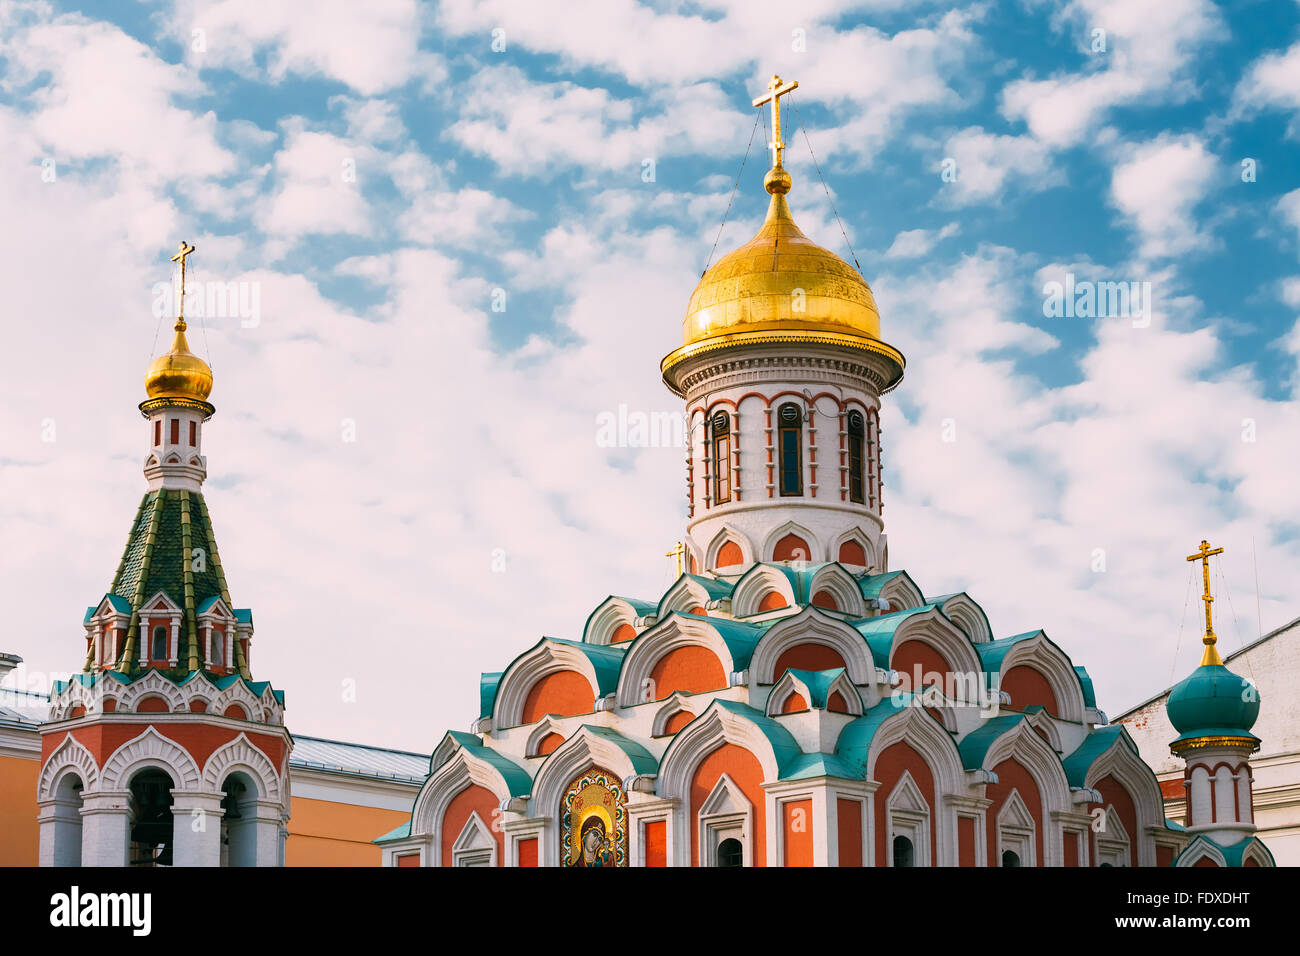 La Cathédrale de Kazan, Moscou. Cathédrale de Notre-Dame de Kazan, est une église orthodoxe russe située sur la Place Rouge à Moscou, Russi Banque D'Images